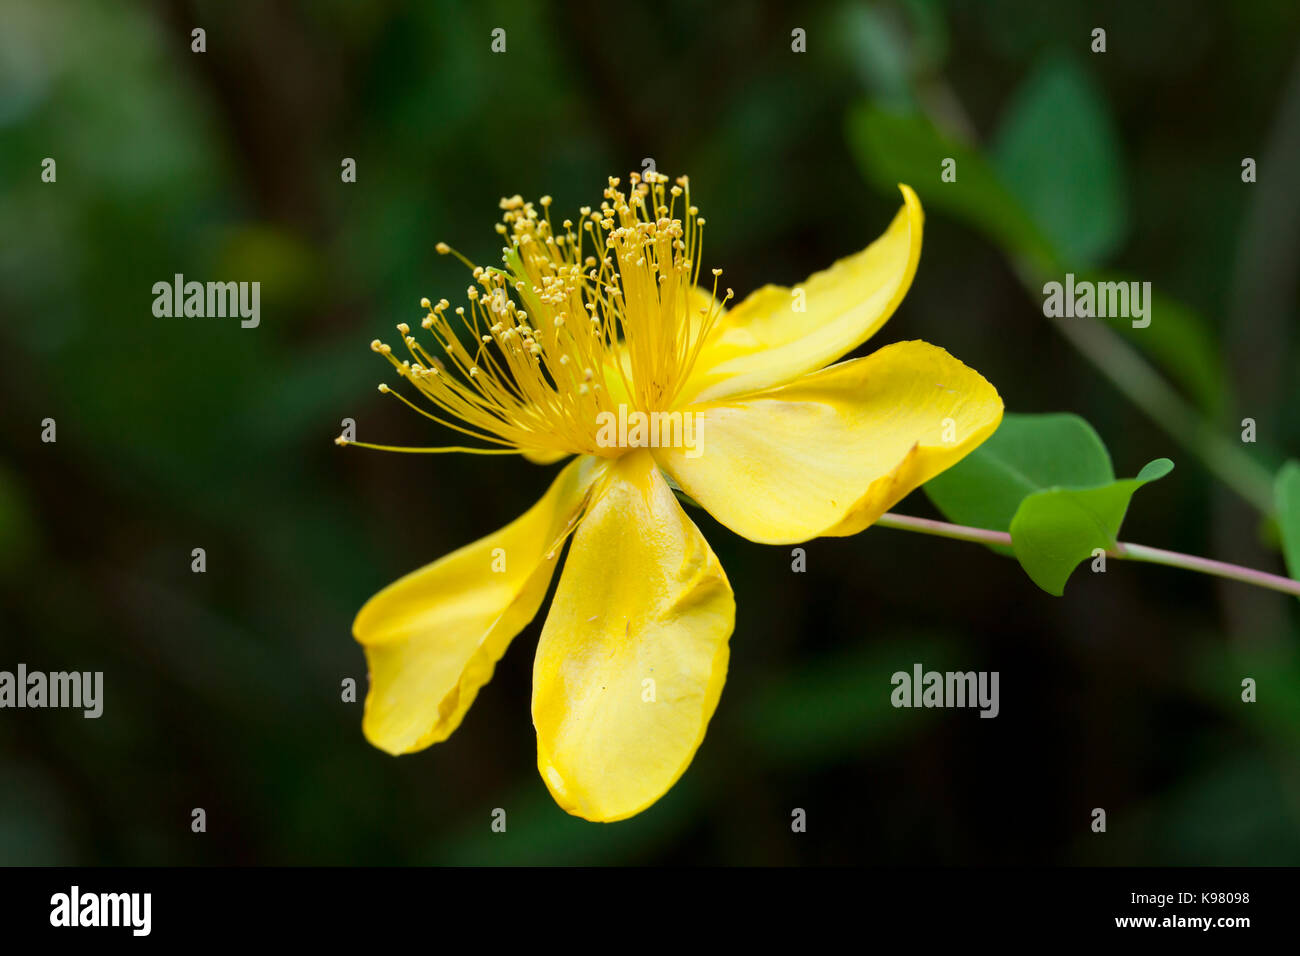 Gelbe Blüte der Rose - von - Sharon strauch Pflanze (Hypericum calycinum), des aka Aaron Bart, Johanniskraut und Jeruselem Stern. - USA Stockfoto